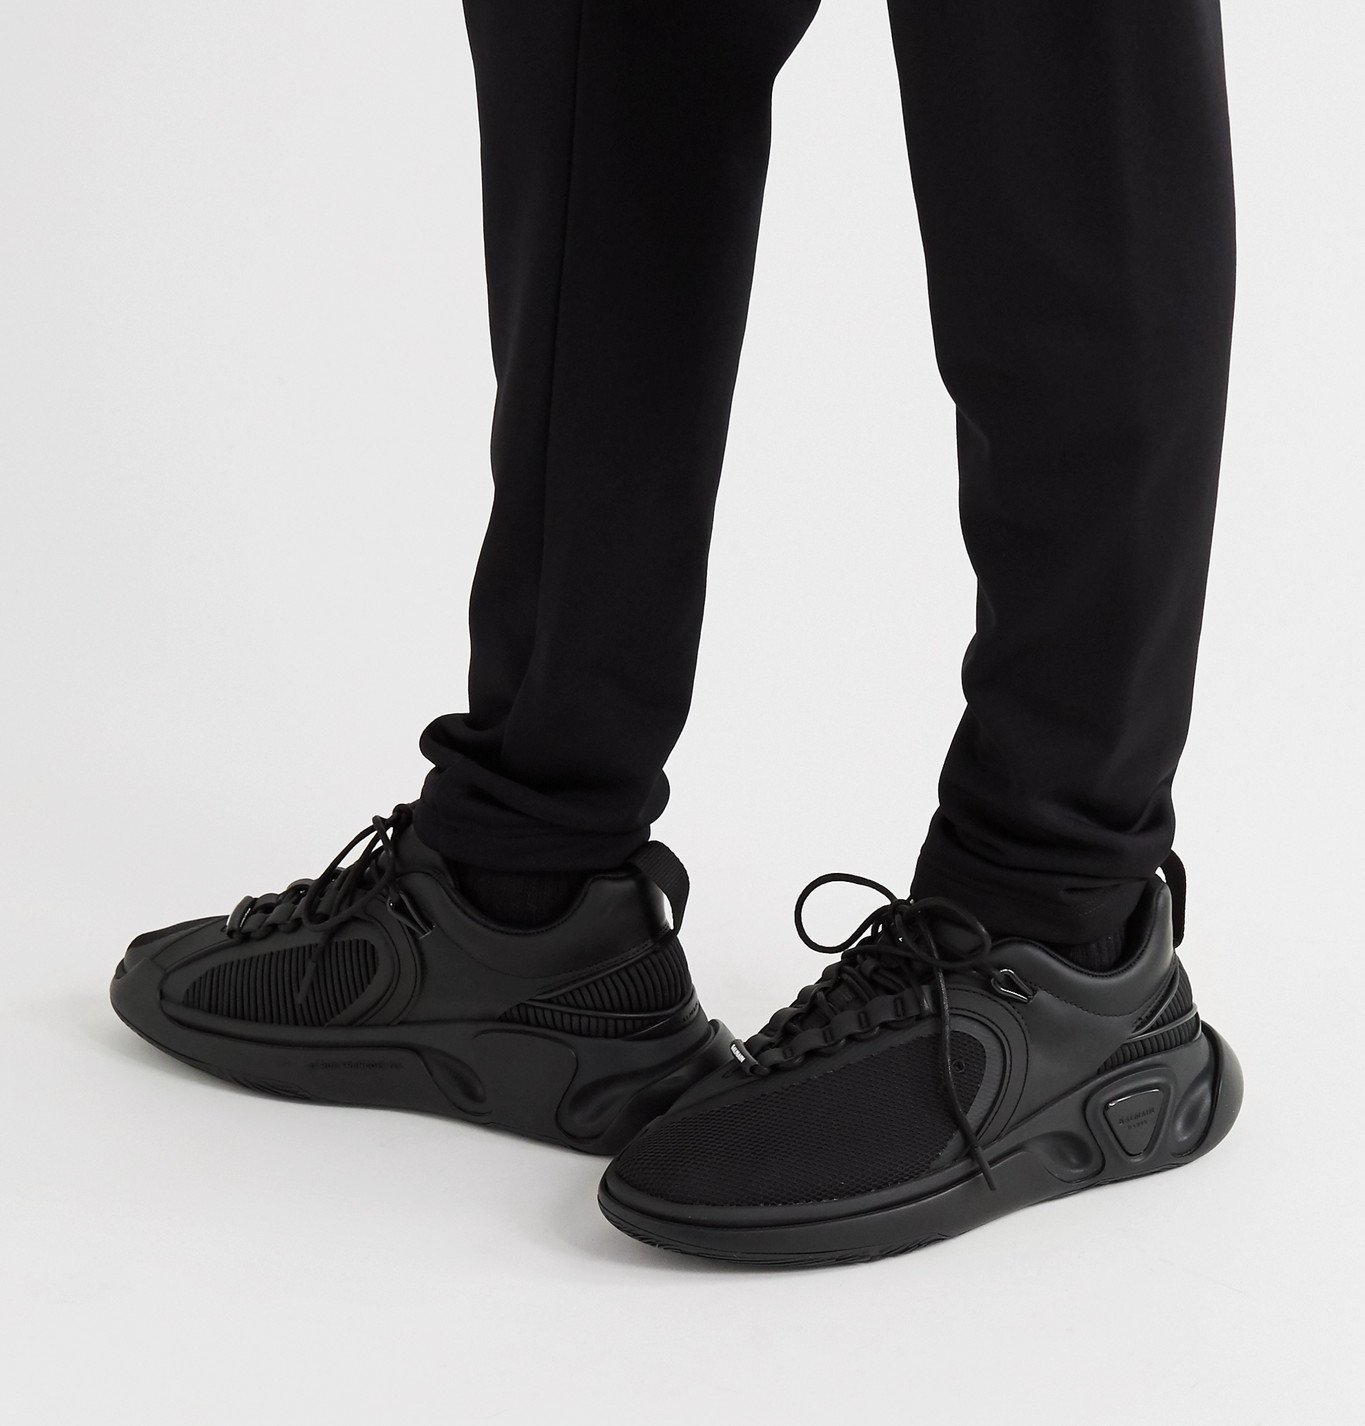 Balmain - B-Runner Nylon and Mesh Sneakers - Black Balmain